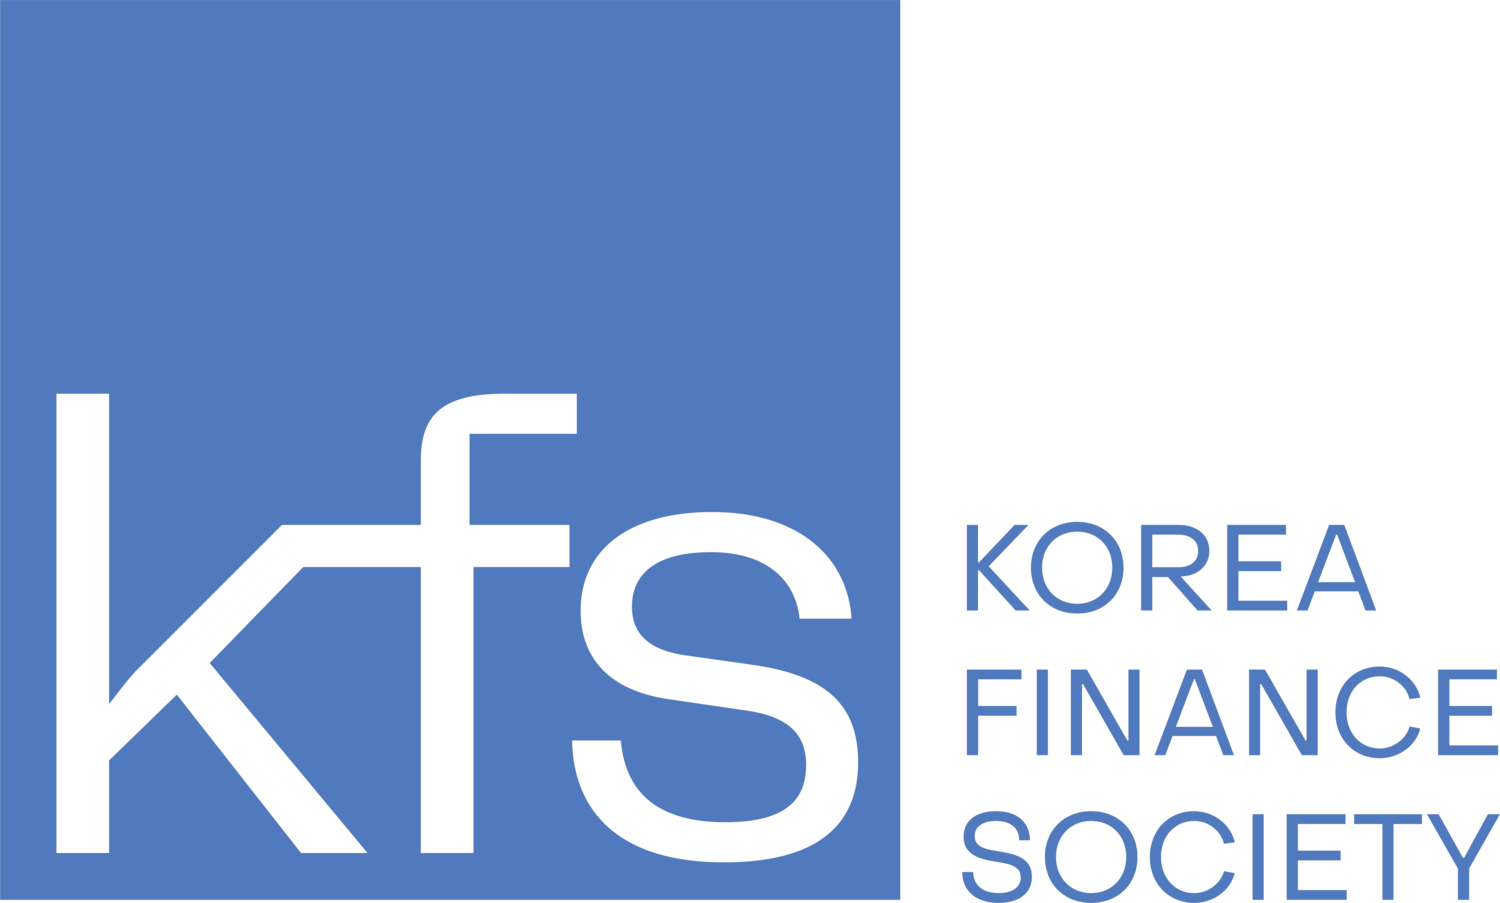 Korea Finance Society